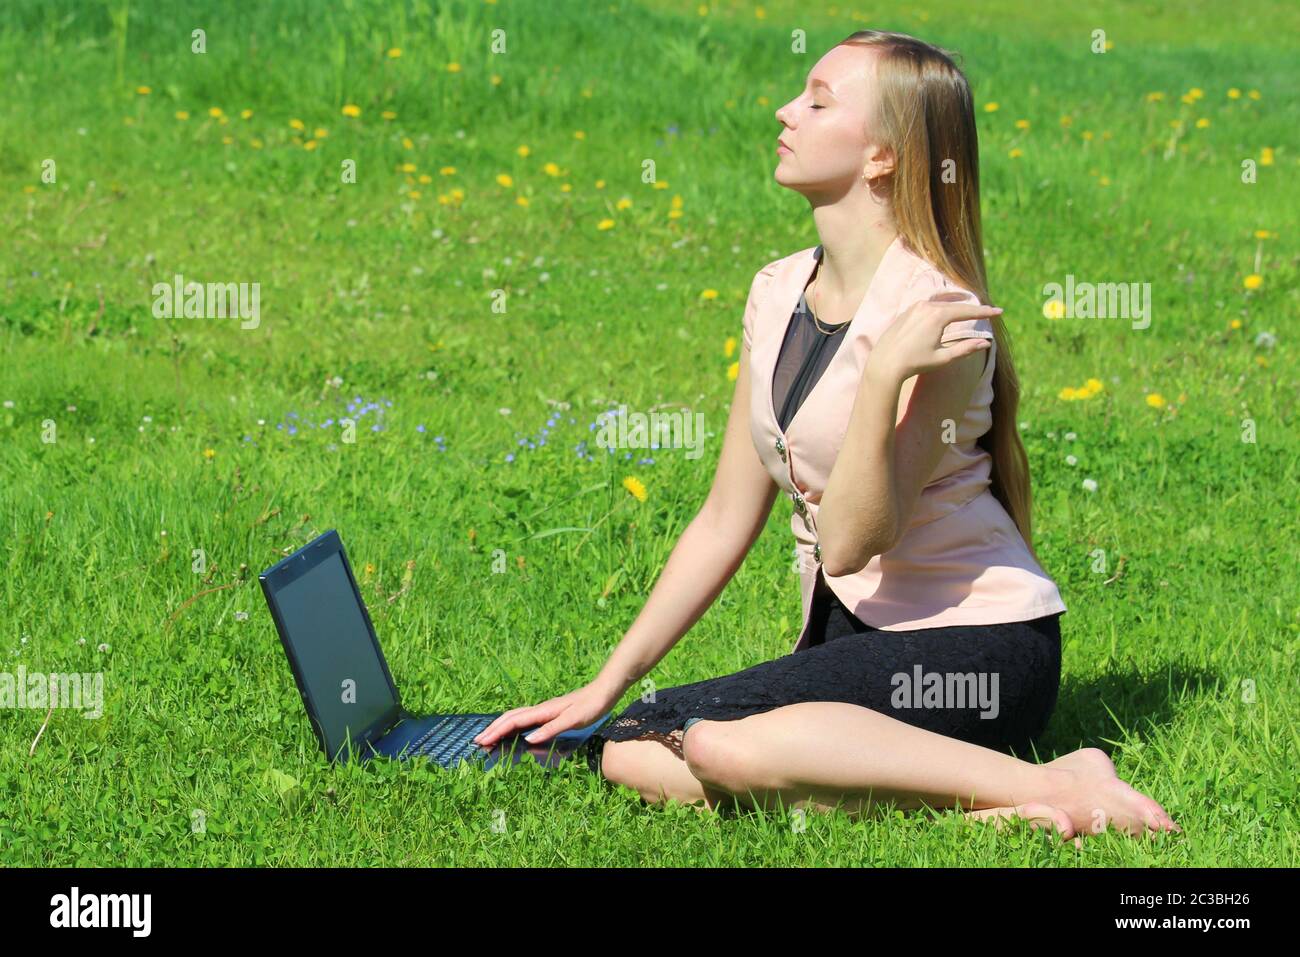 Une belle jeune fille blanche dans une veste rose et une jupe noire et avec de longs cheveux assis sur l'herbe verte, sur la pelouse et travaillant derrière un ordinateur portable noir. Banque D'Images